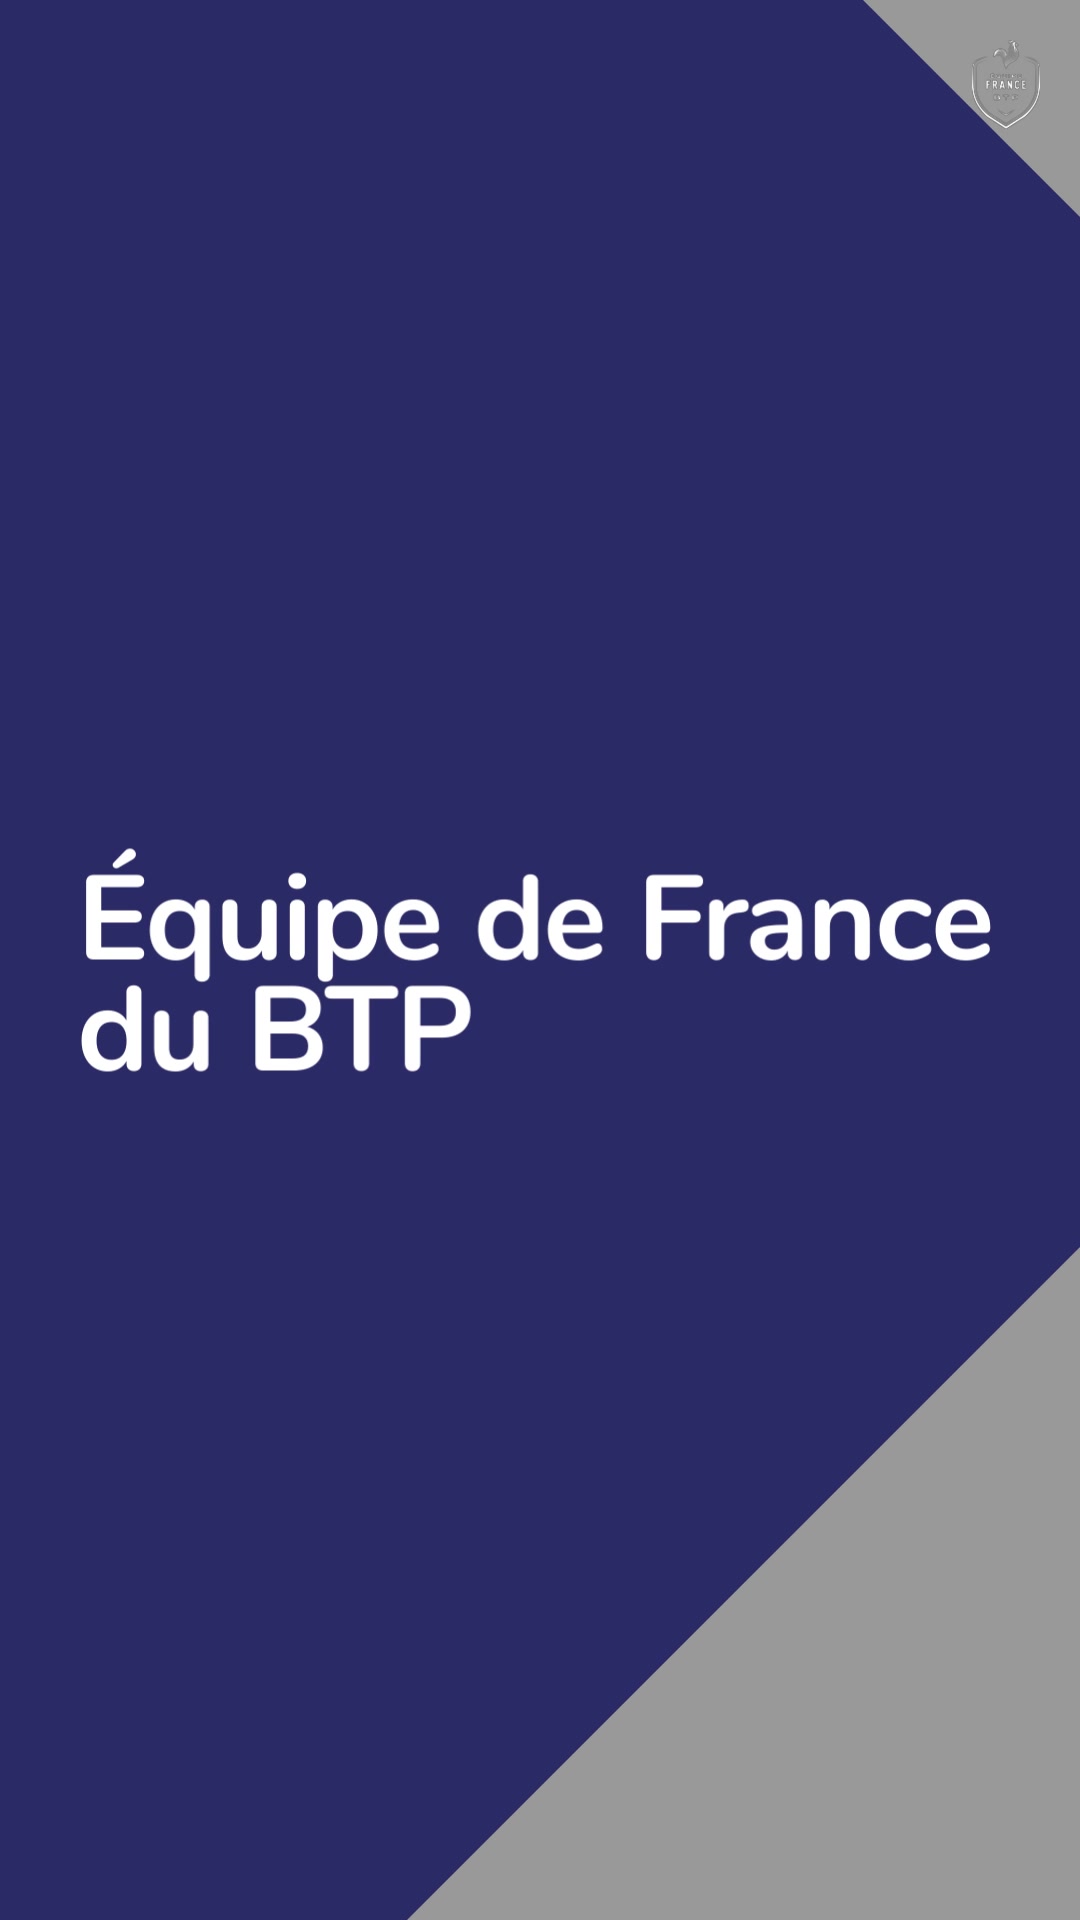 👷‍♀️ Équipe de France du BTP 👷‍♂️ Découvrez les membres de l'Équipe de France du BTP qui représ...